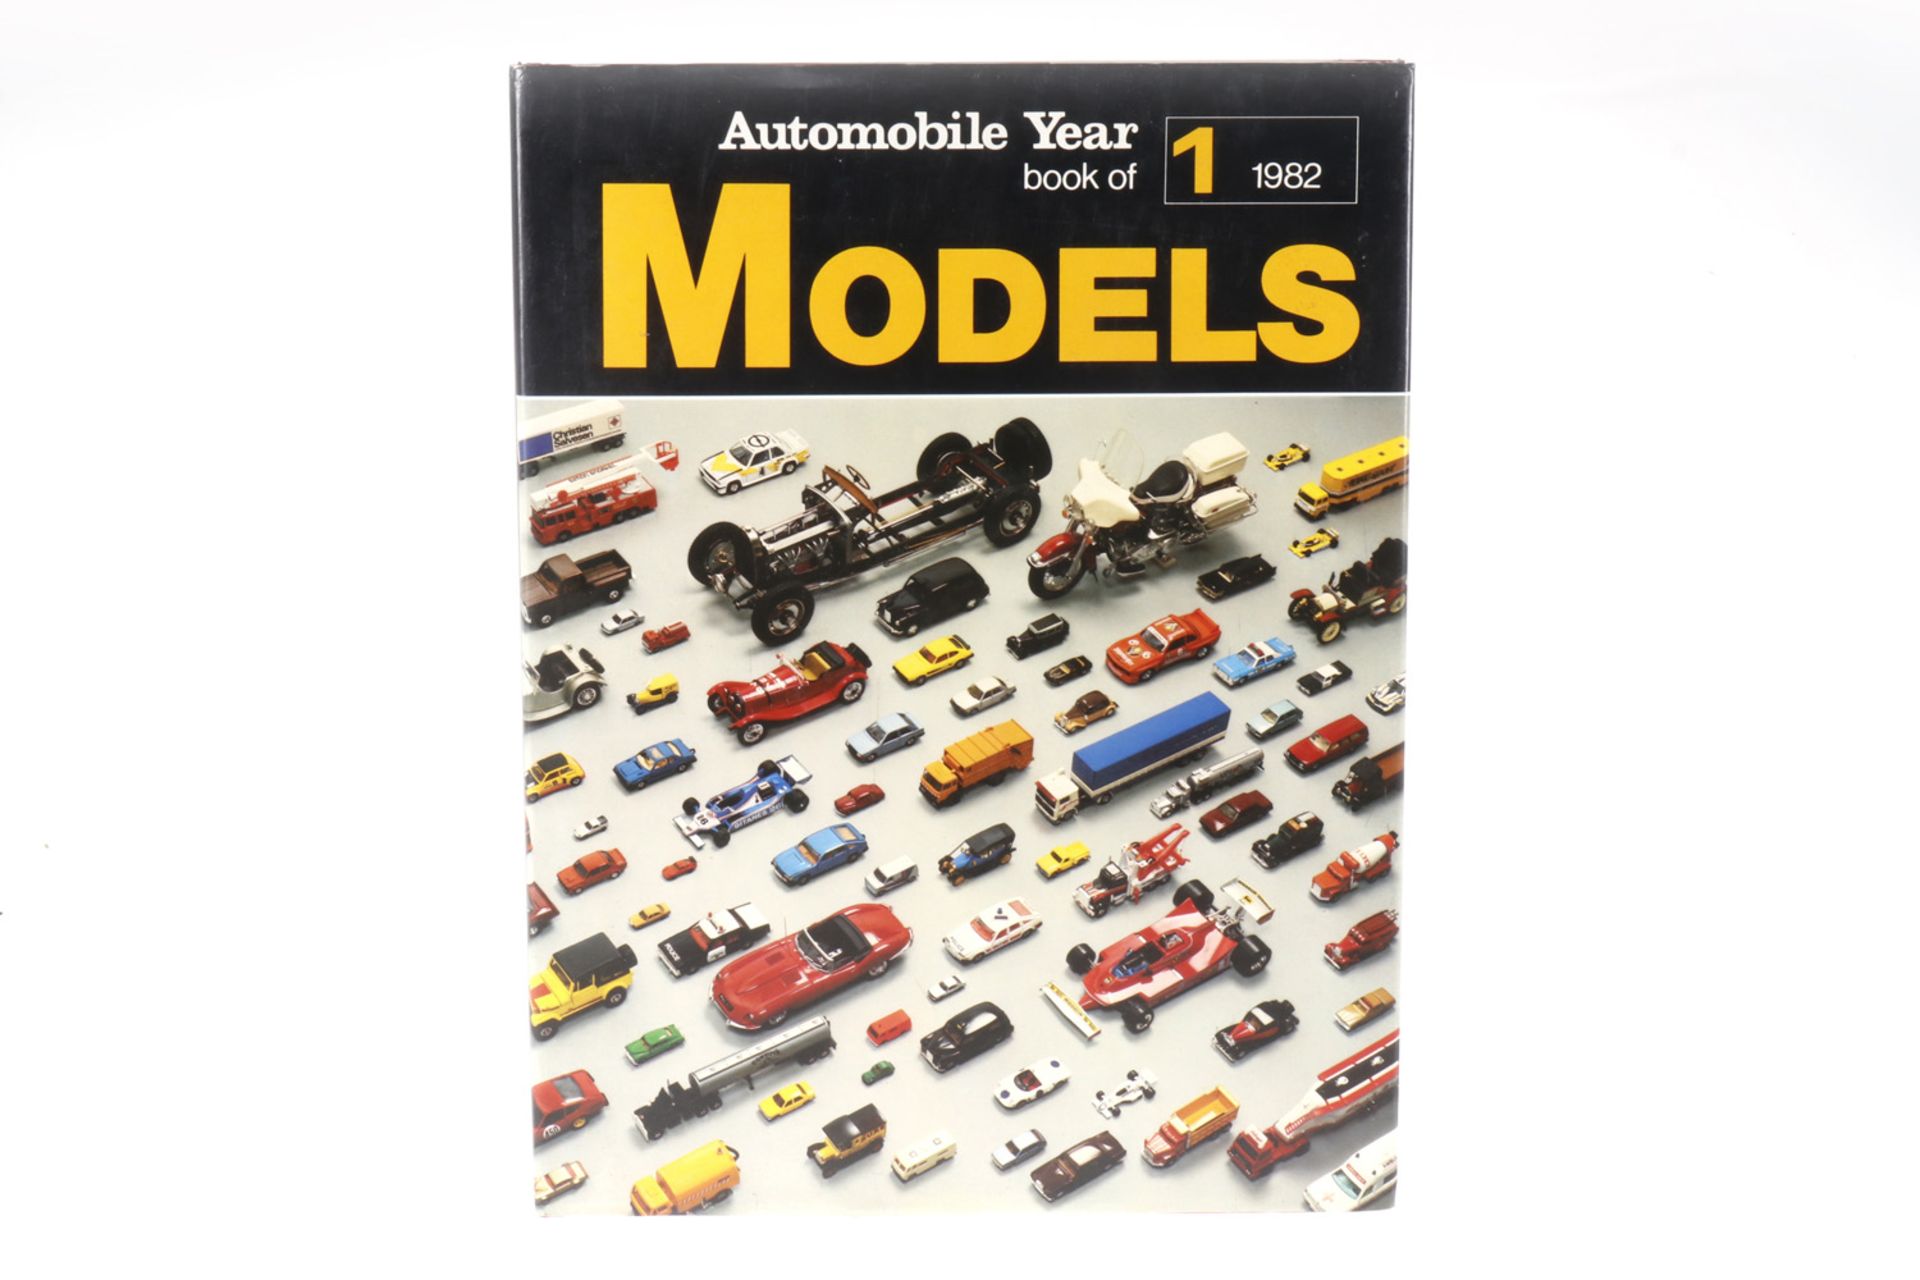 Buch "Automobile Year 1" 1982 Models, 168 Seiten, Alterungsspuren